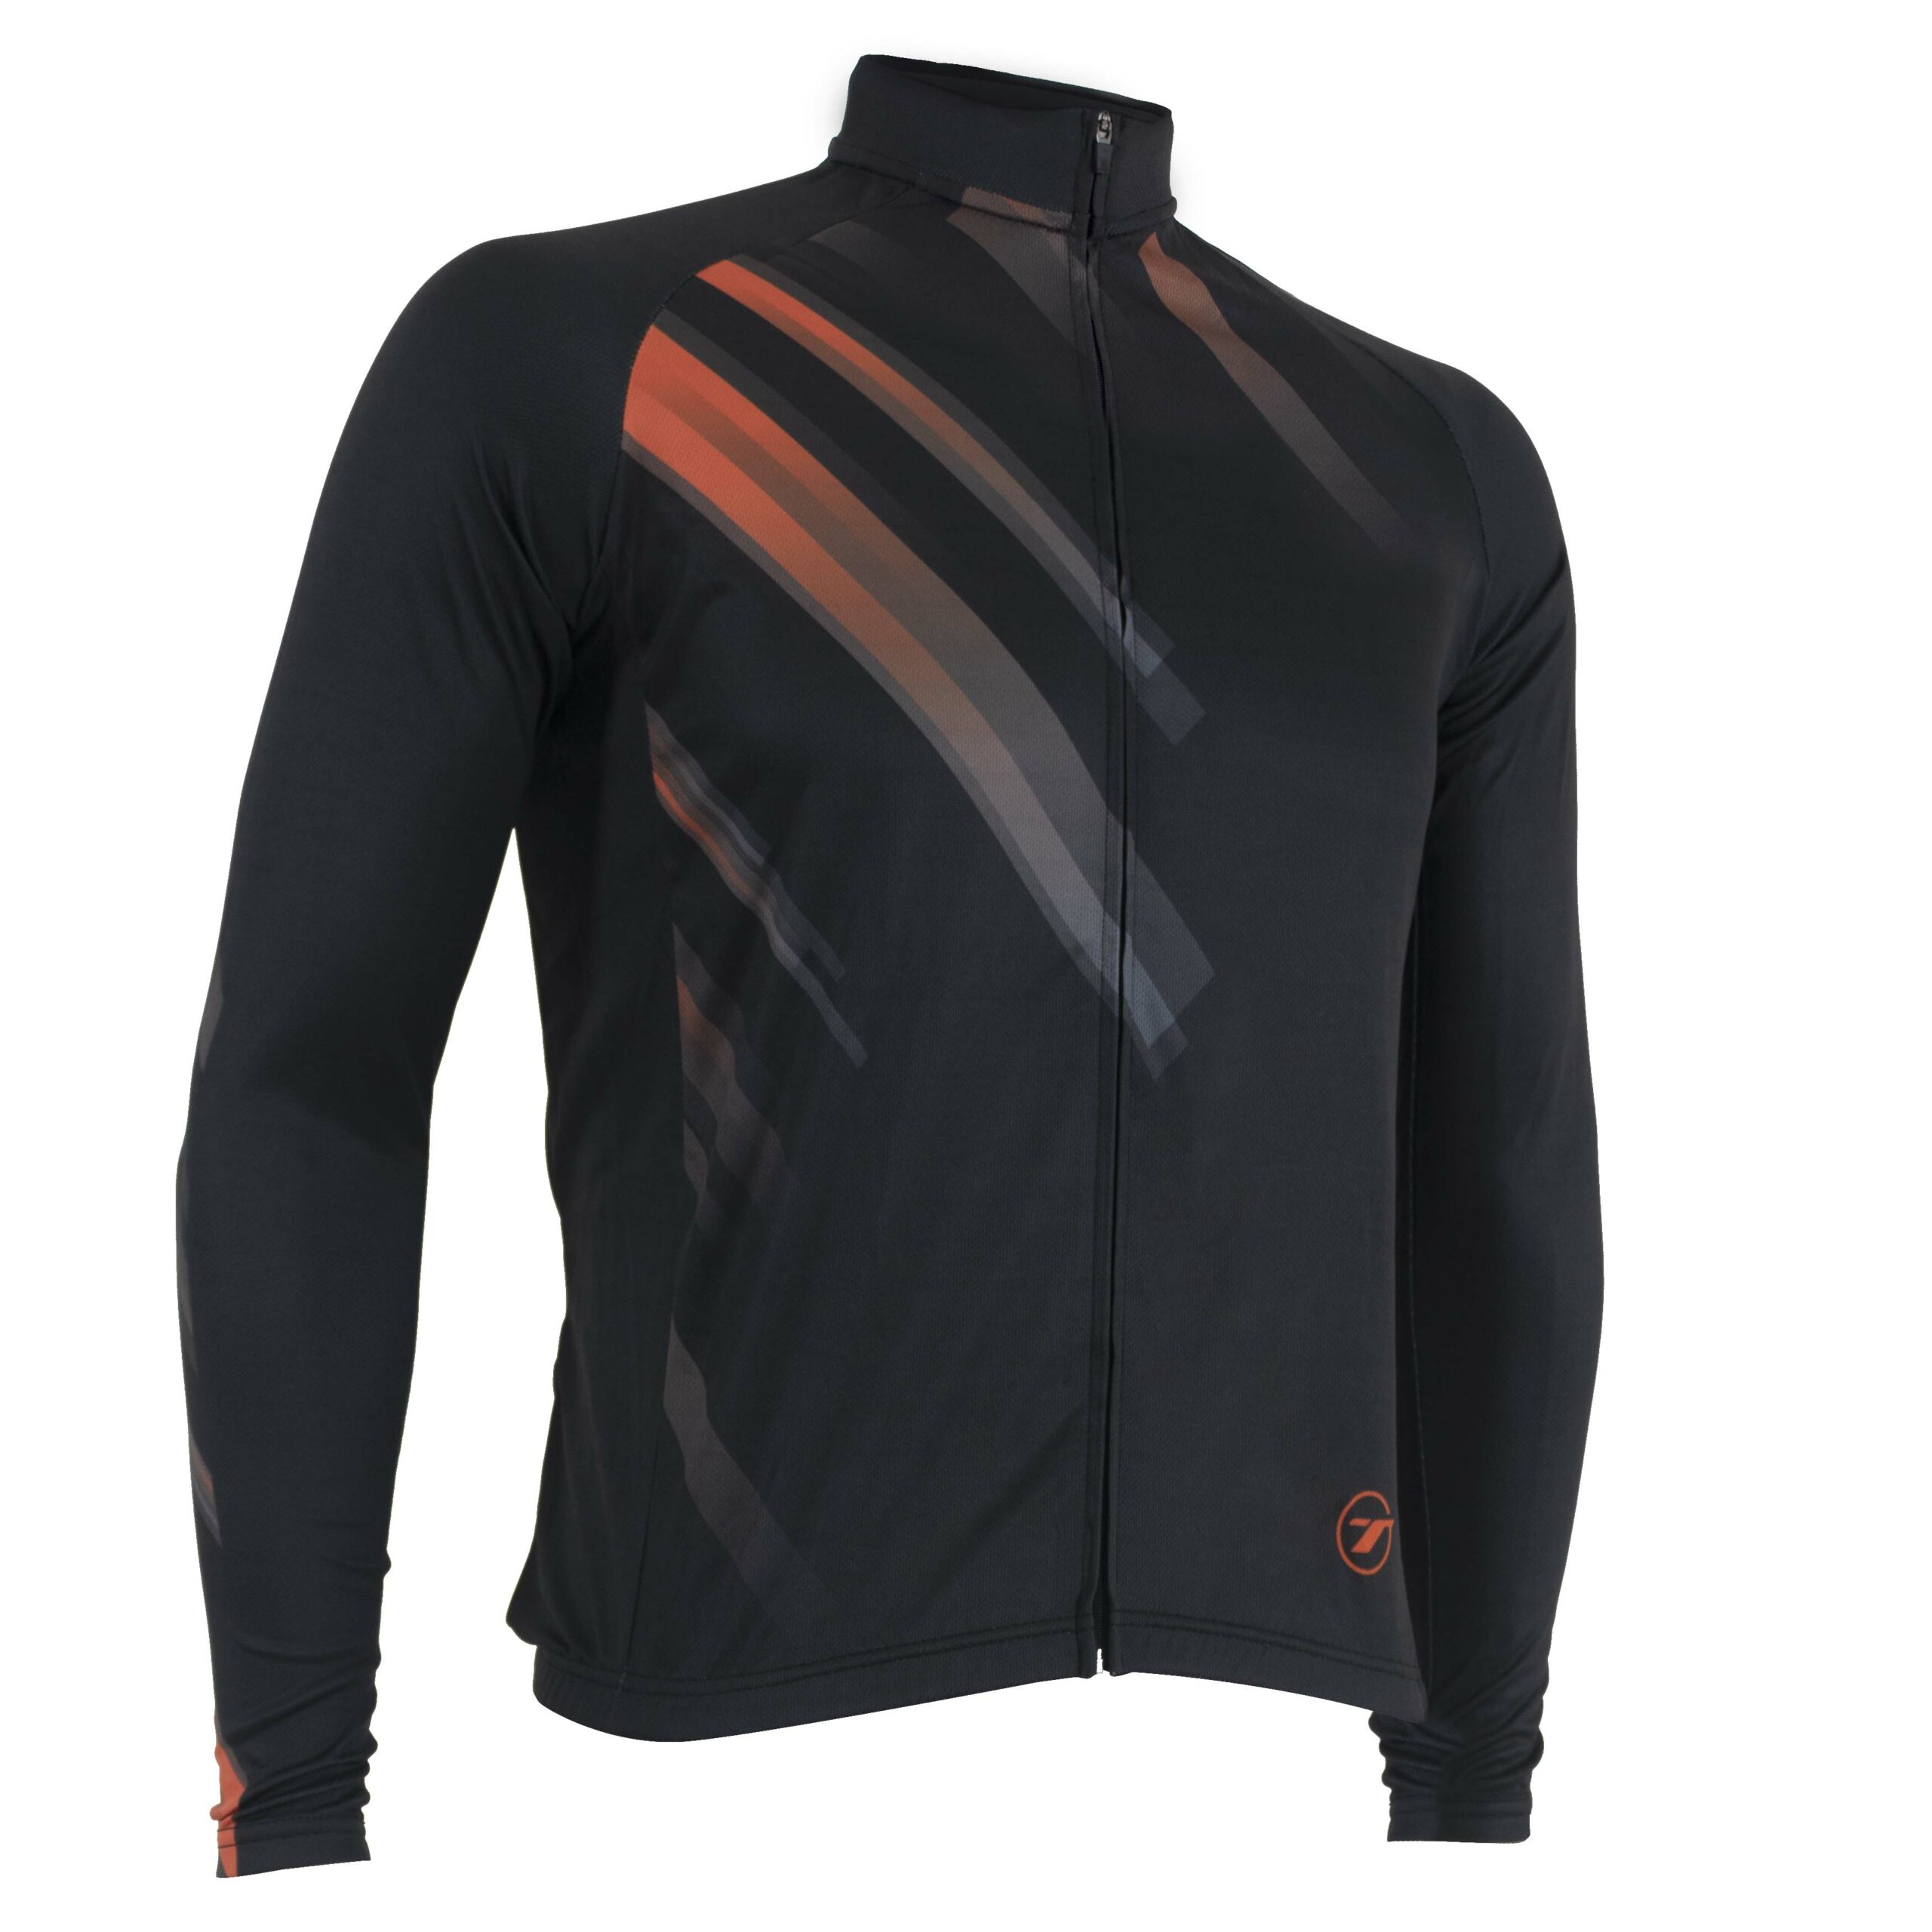 Camisa manga longa para ciclismo SUNNY | RIDE LINE - Preto/Laranja, P